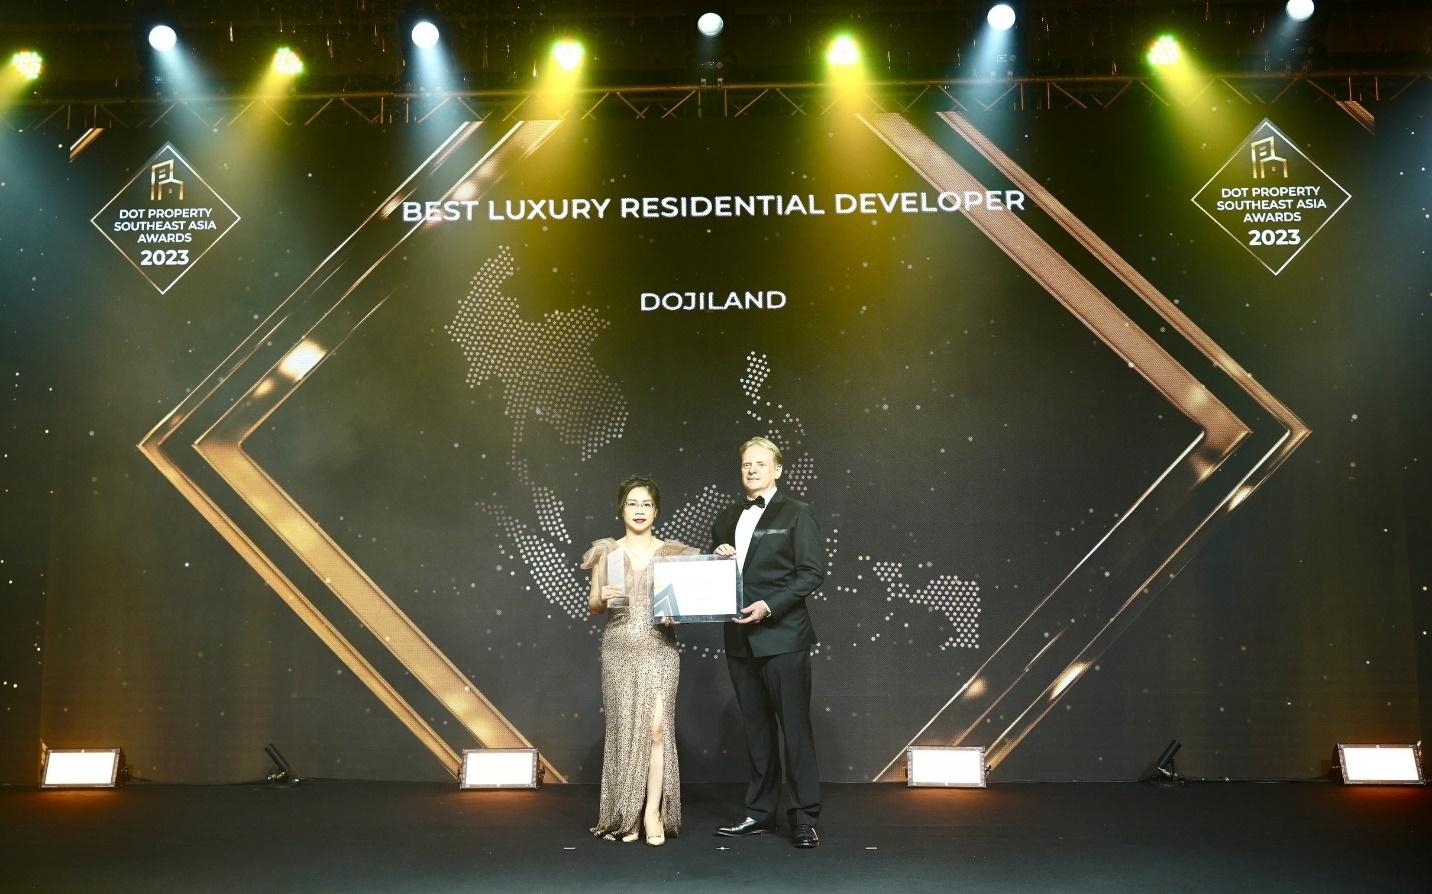 Đại diện DOJILAND nhận giải Nhà phát triển bất động sản hạng sang tốt nhất năm 2023